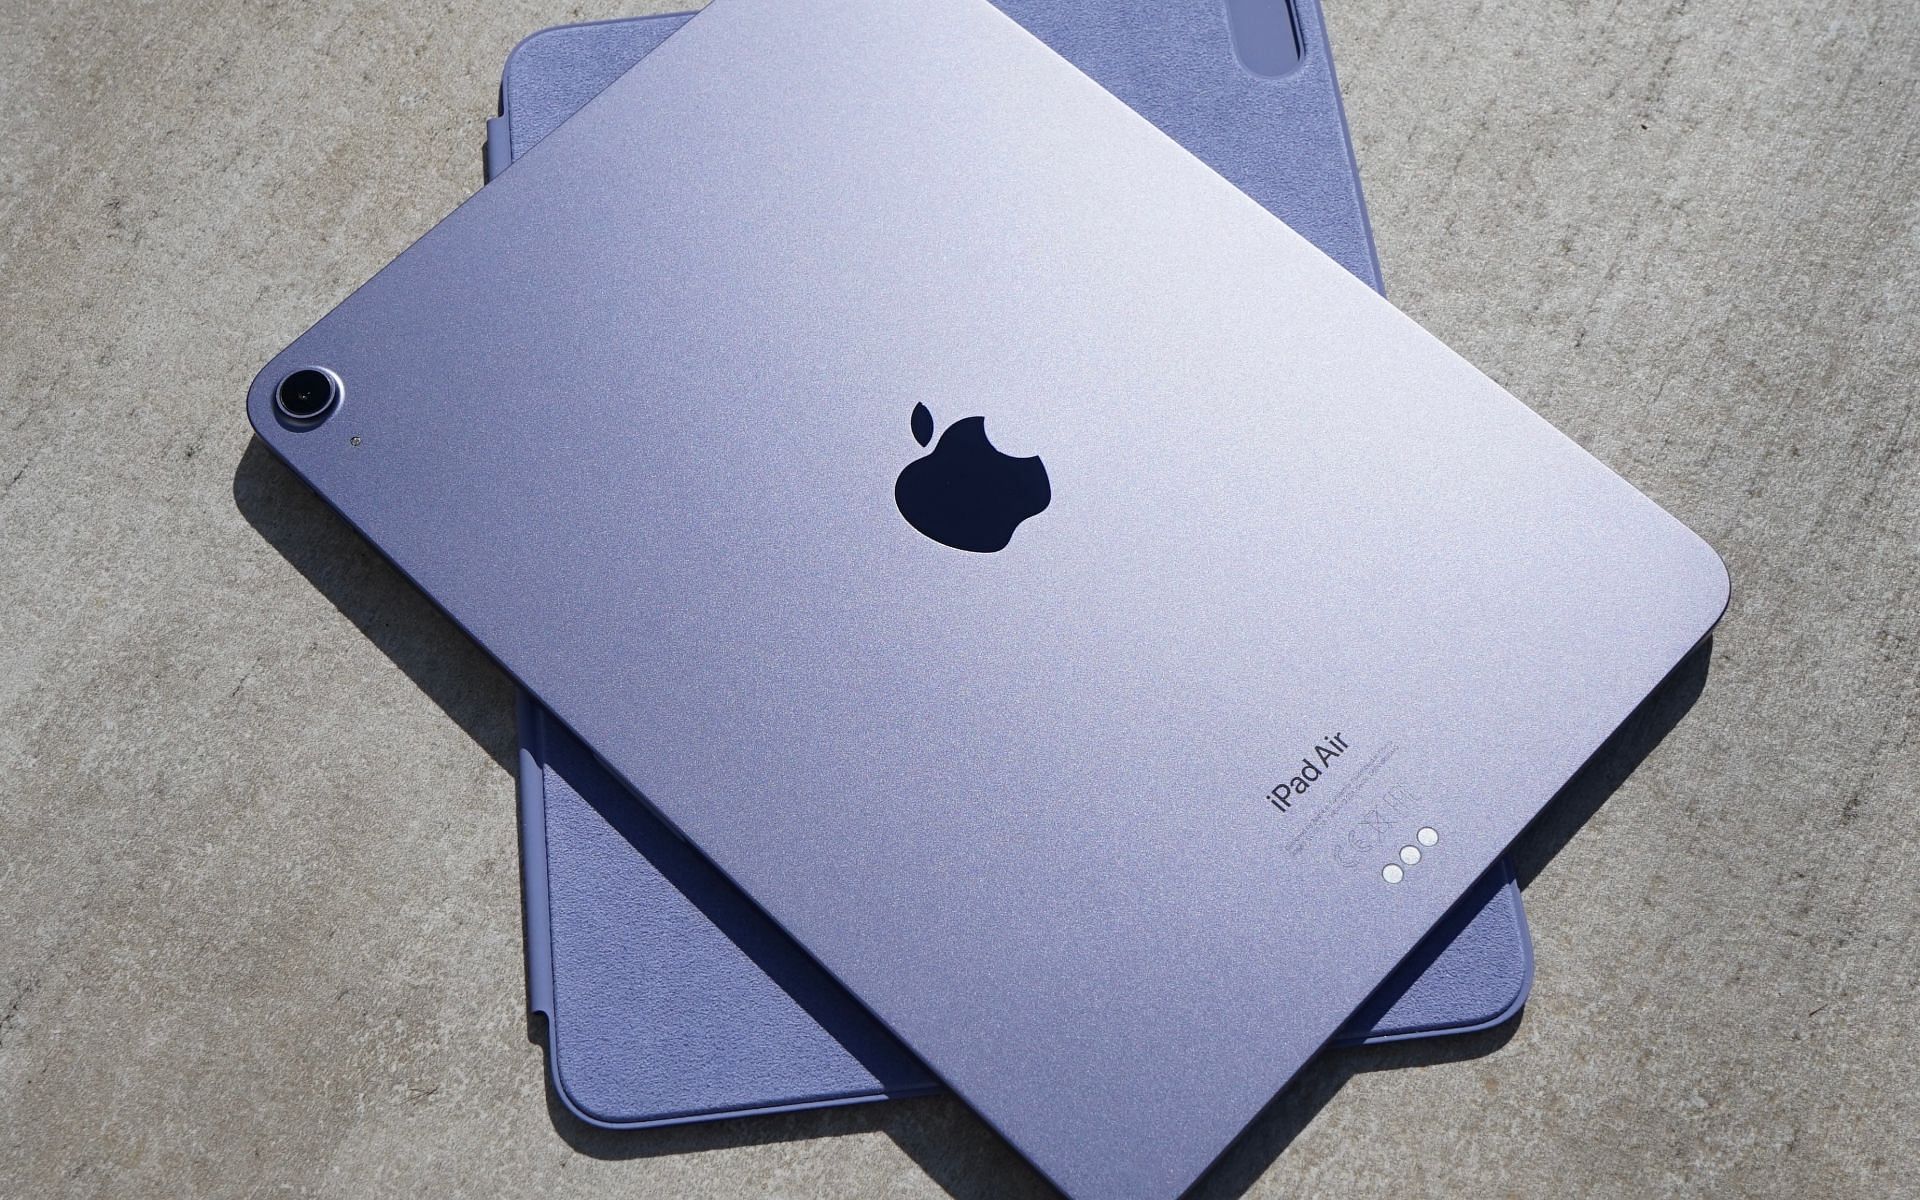 The 2022 iPad Air (Image via Apple)